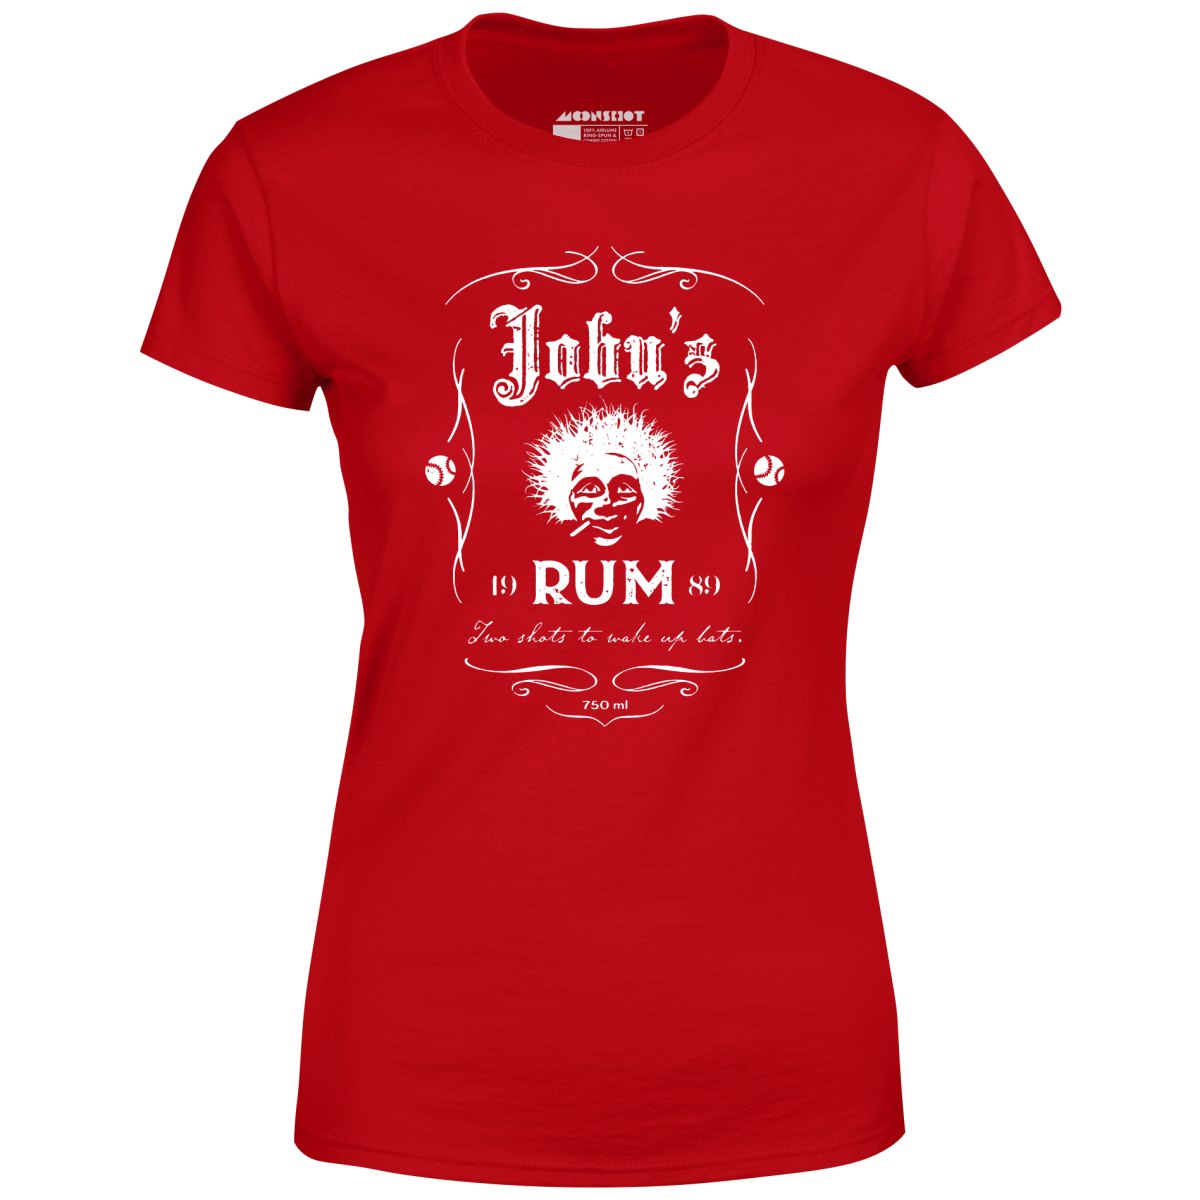 Jobu's Rum - Women's T-Shirt